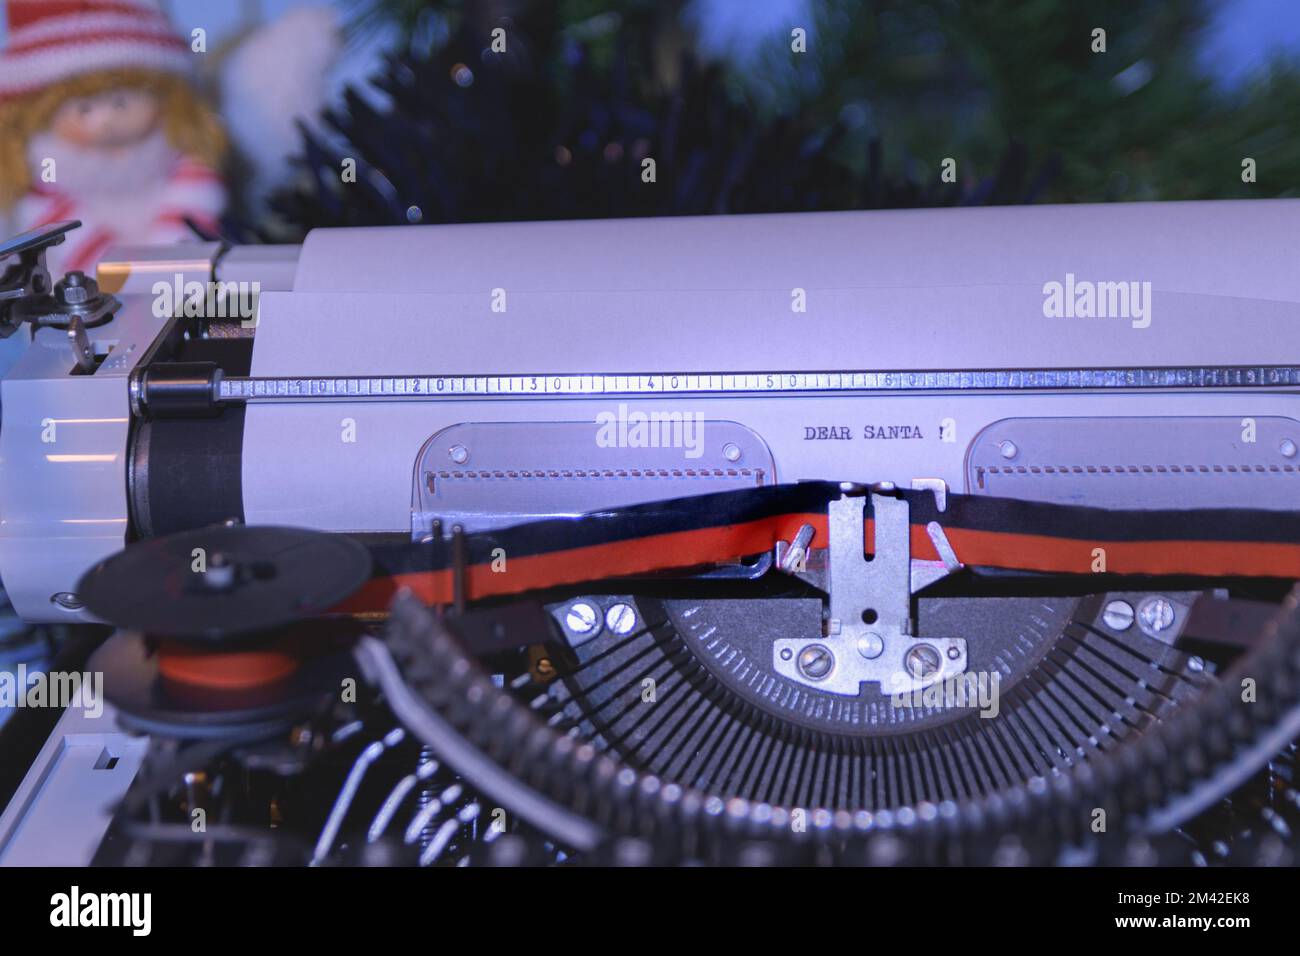 Lettre de souhaits à Santa pinting sur machine à écrire manuelle Vintage Banque D'Images